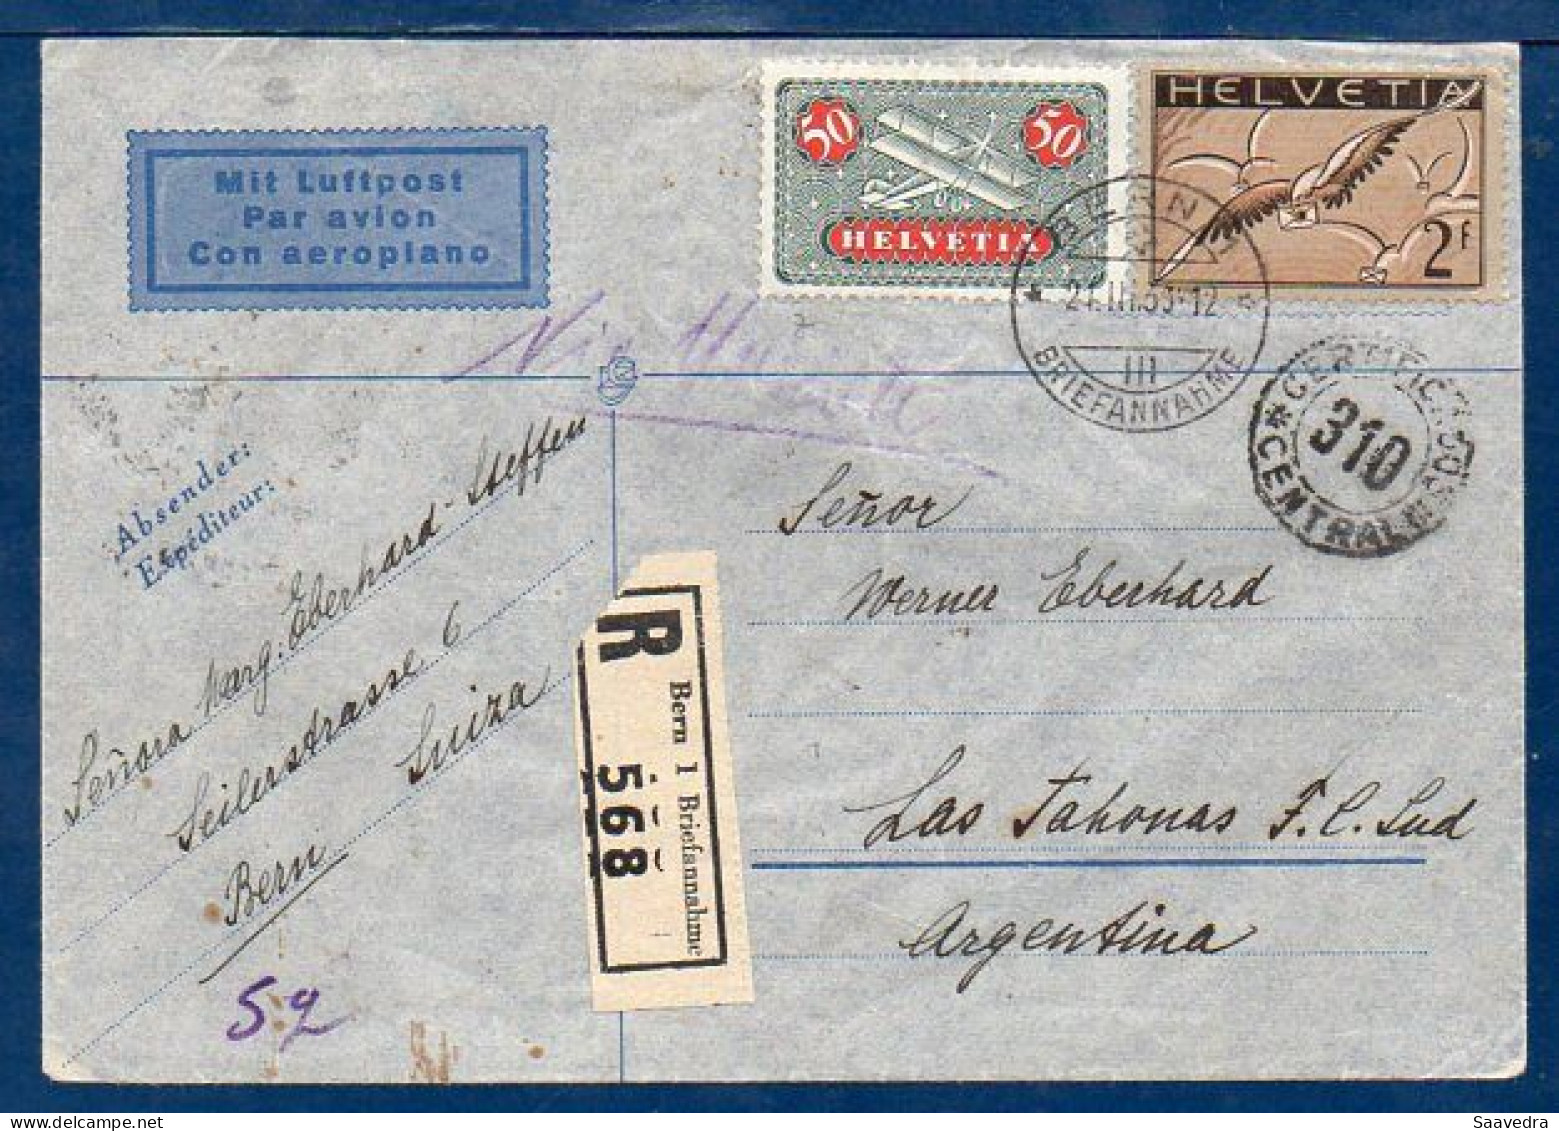 Switzerland To Argentina, 1936, Via Air France  (008) - Luftpost